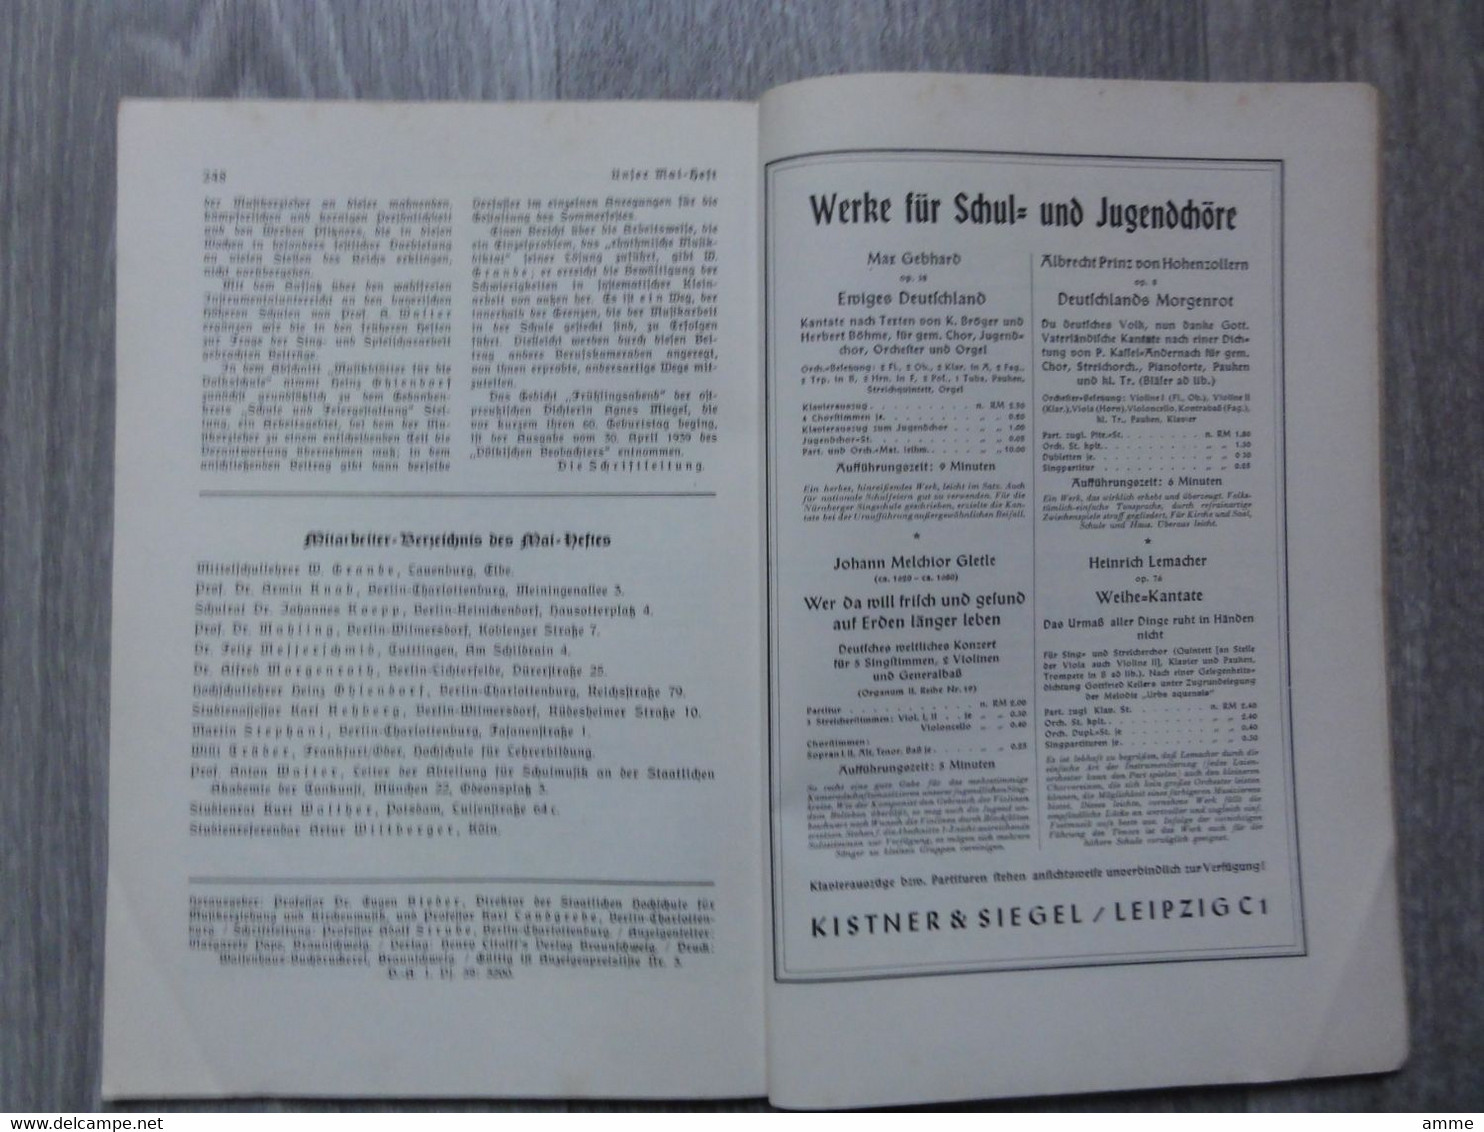 Völkische Musikerziehung  (boek Duits)  Mai 1939  - Monatsschrift Fur Das Musikerziehungswesen - Musik